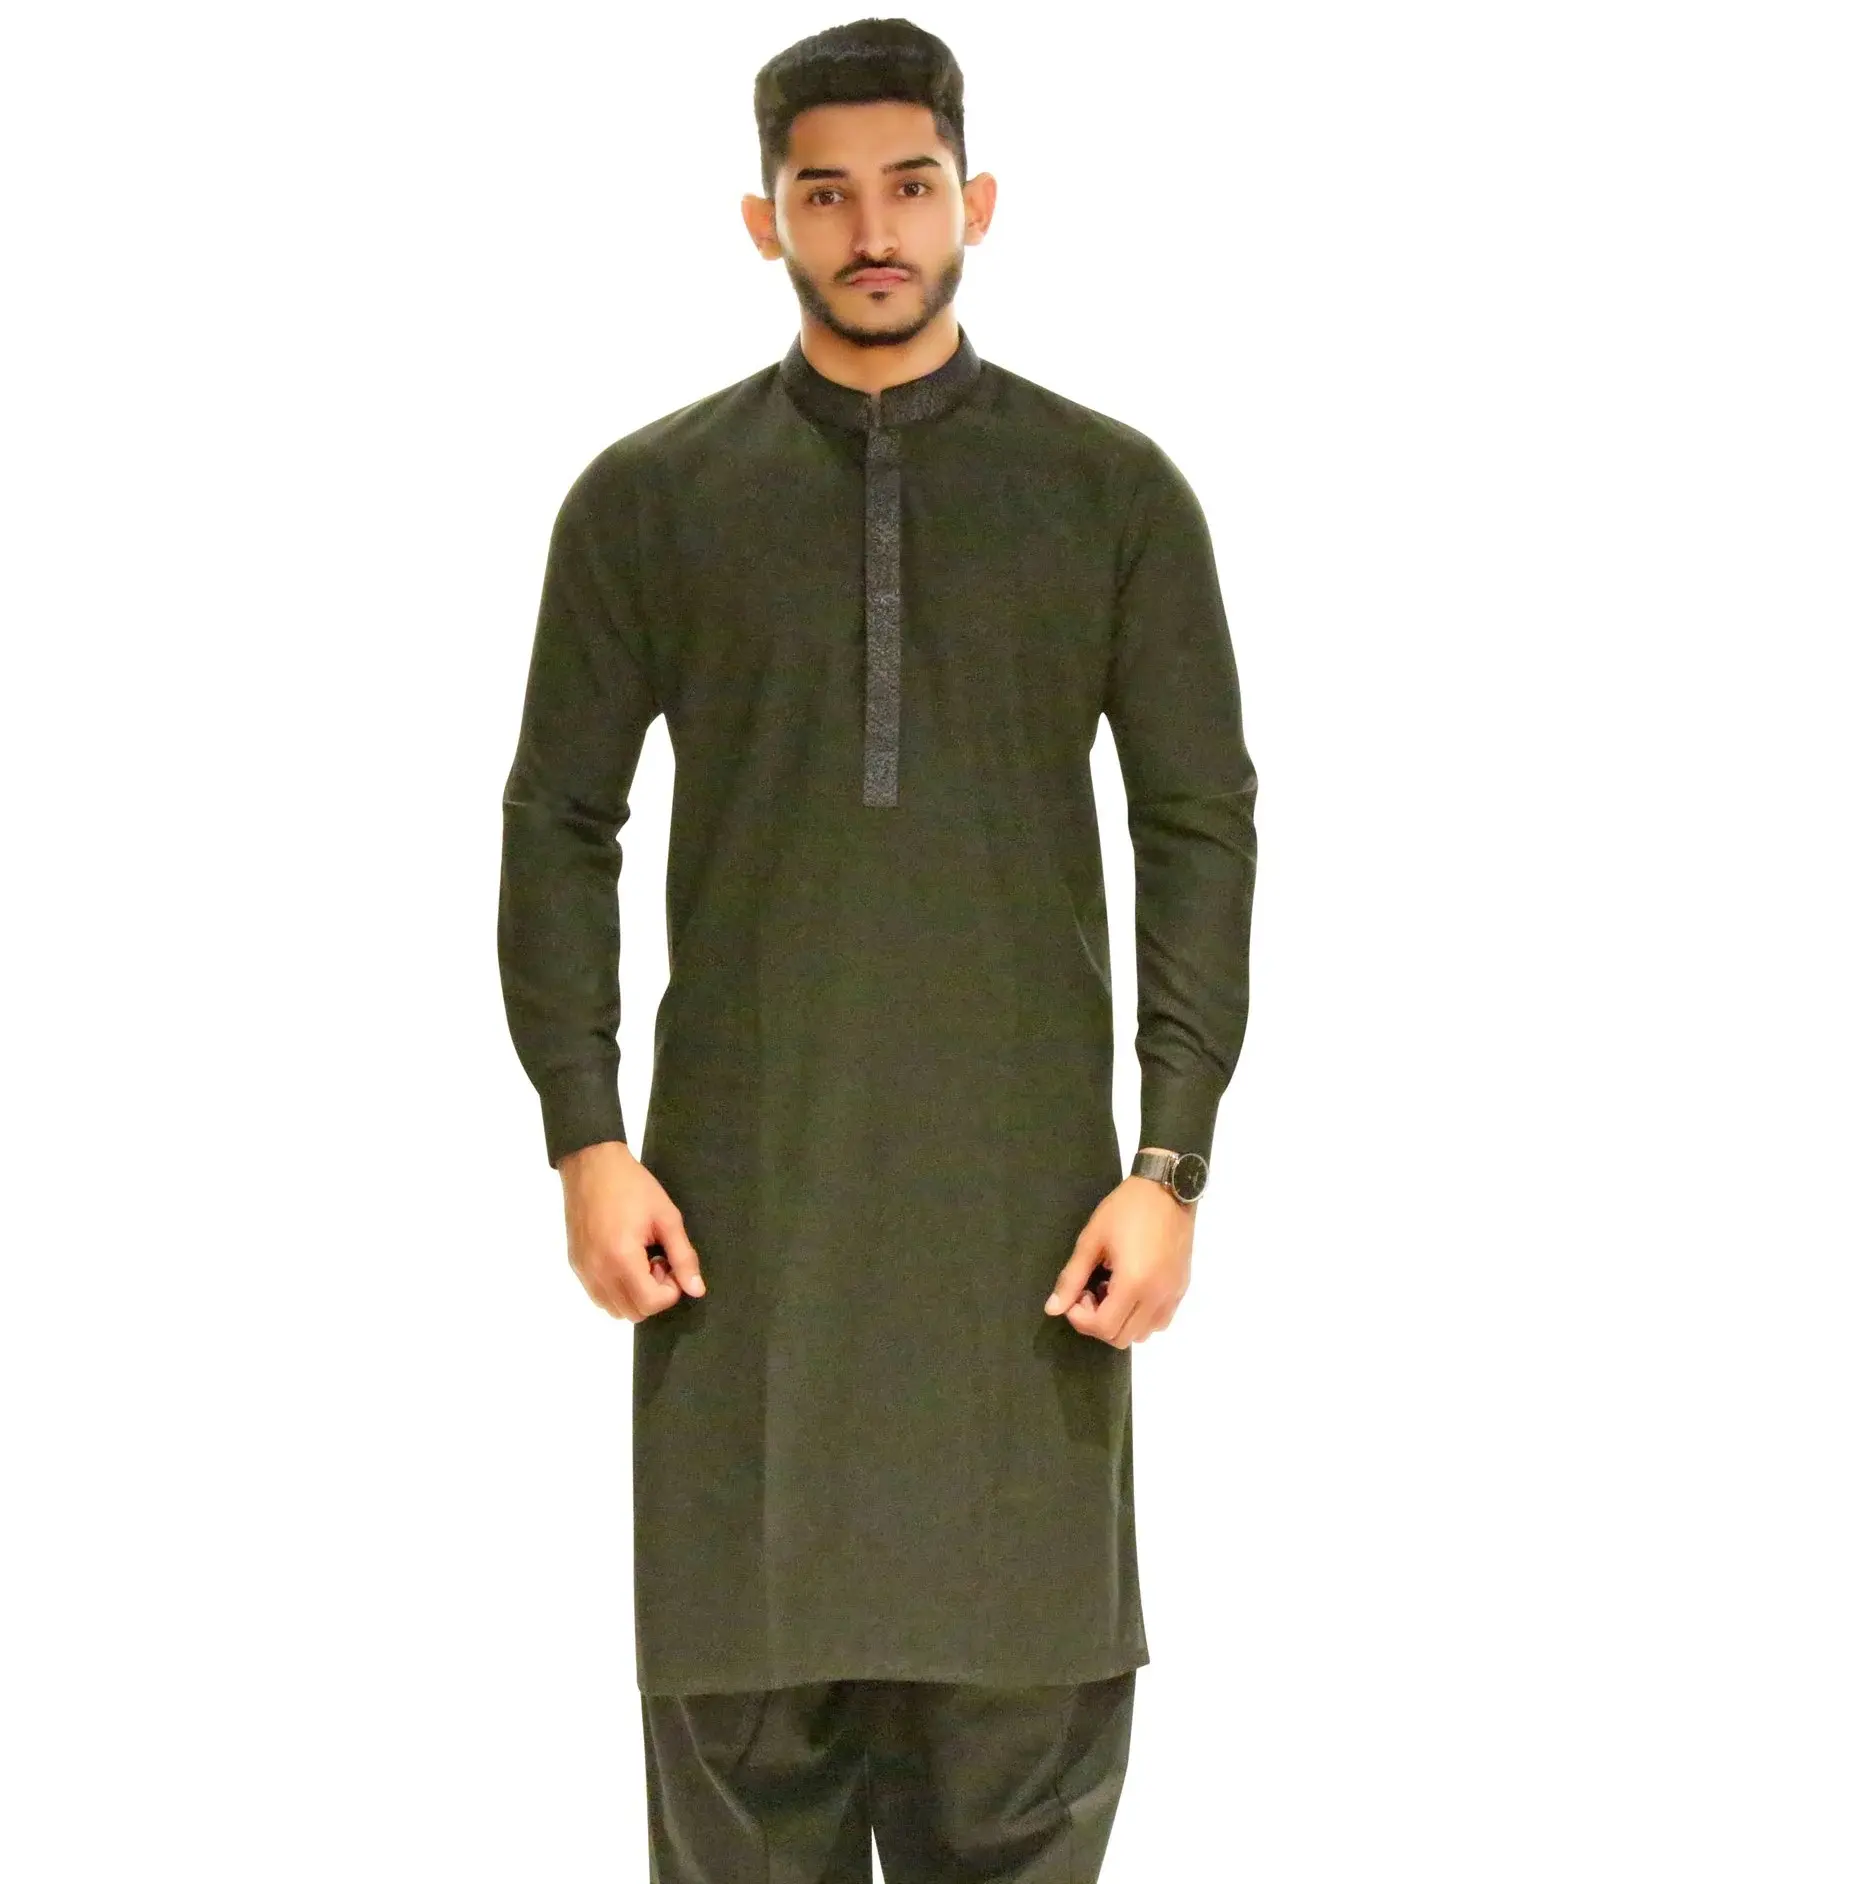 Transpirable Top Venta de calidad superior último estilo Shalwar Kameez para hombres s venta al por mayor tamaño de Color personalizado